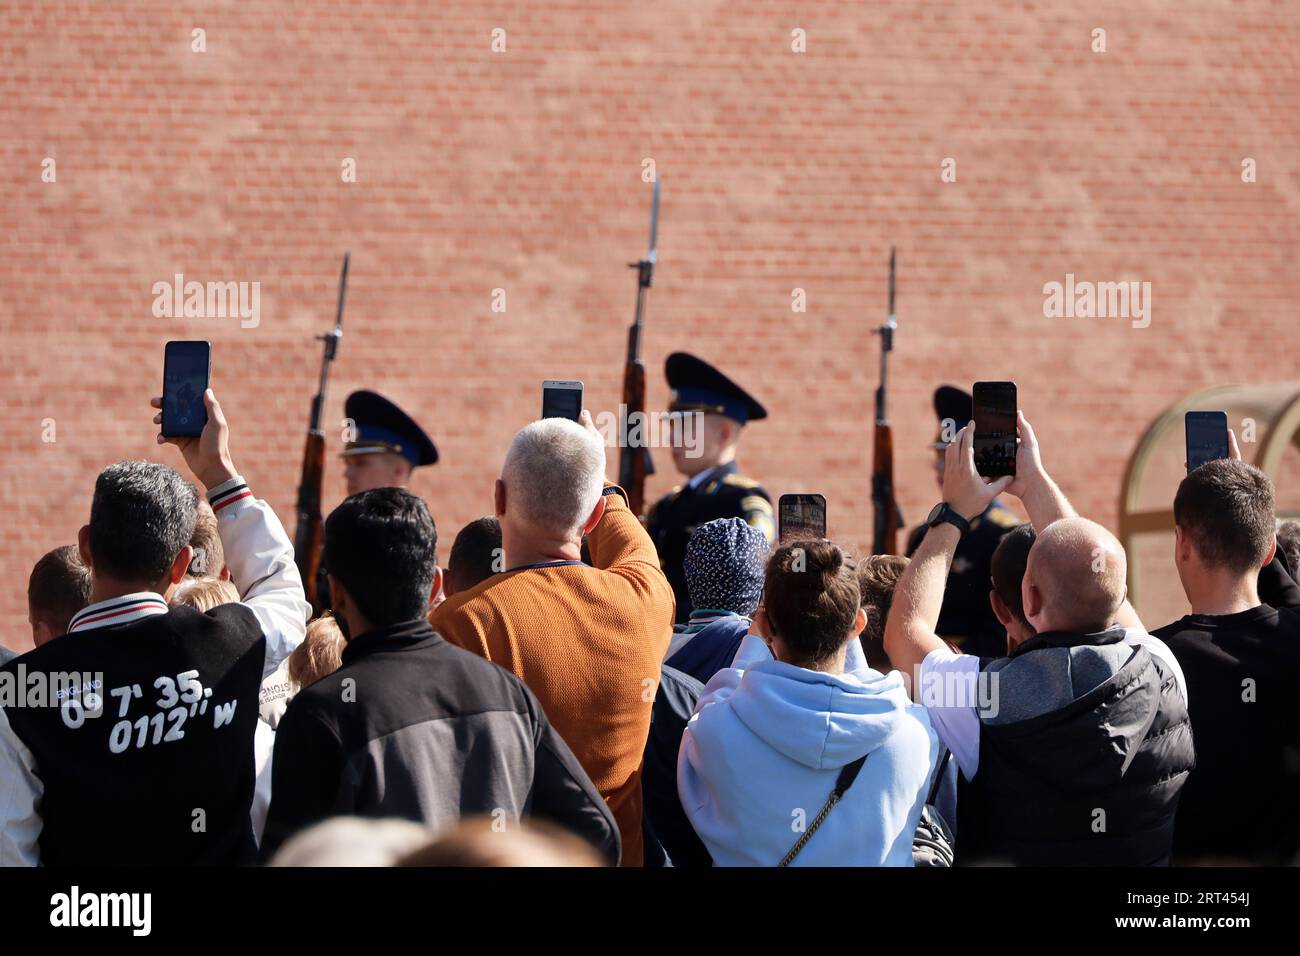 Touristen, die am märz in der Nähe der Kreml-Mauer Fotos von russischen Soldaten auf Smartphones machen. Wechsel der Ehrenwache des Präsidentenregiments Stockfoto